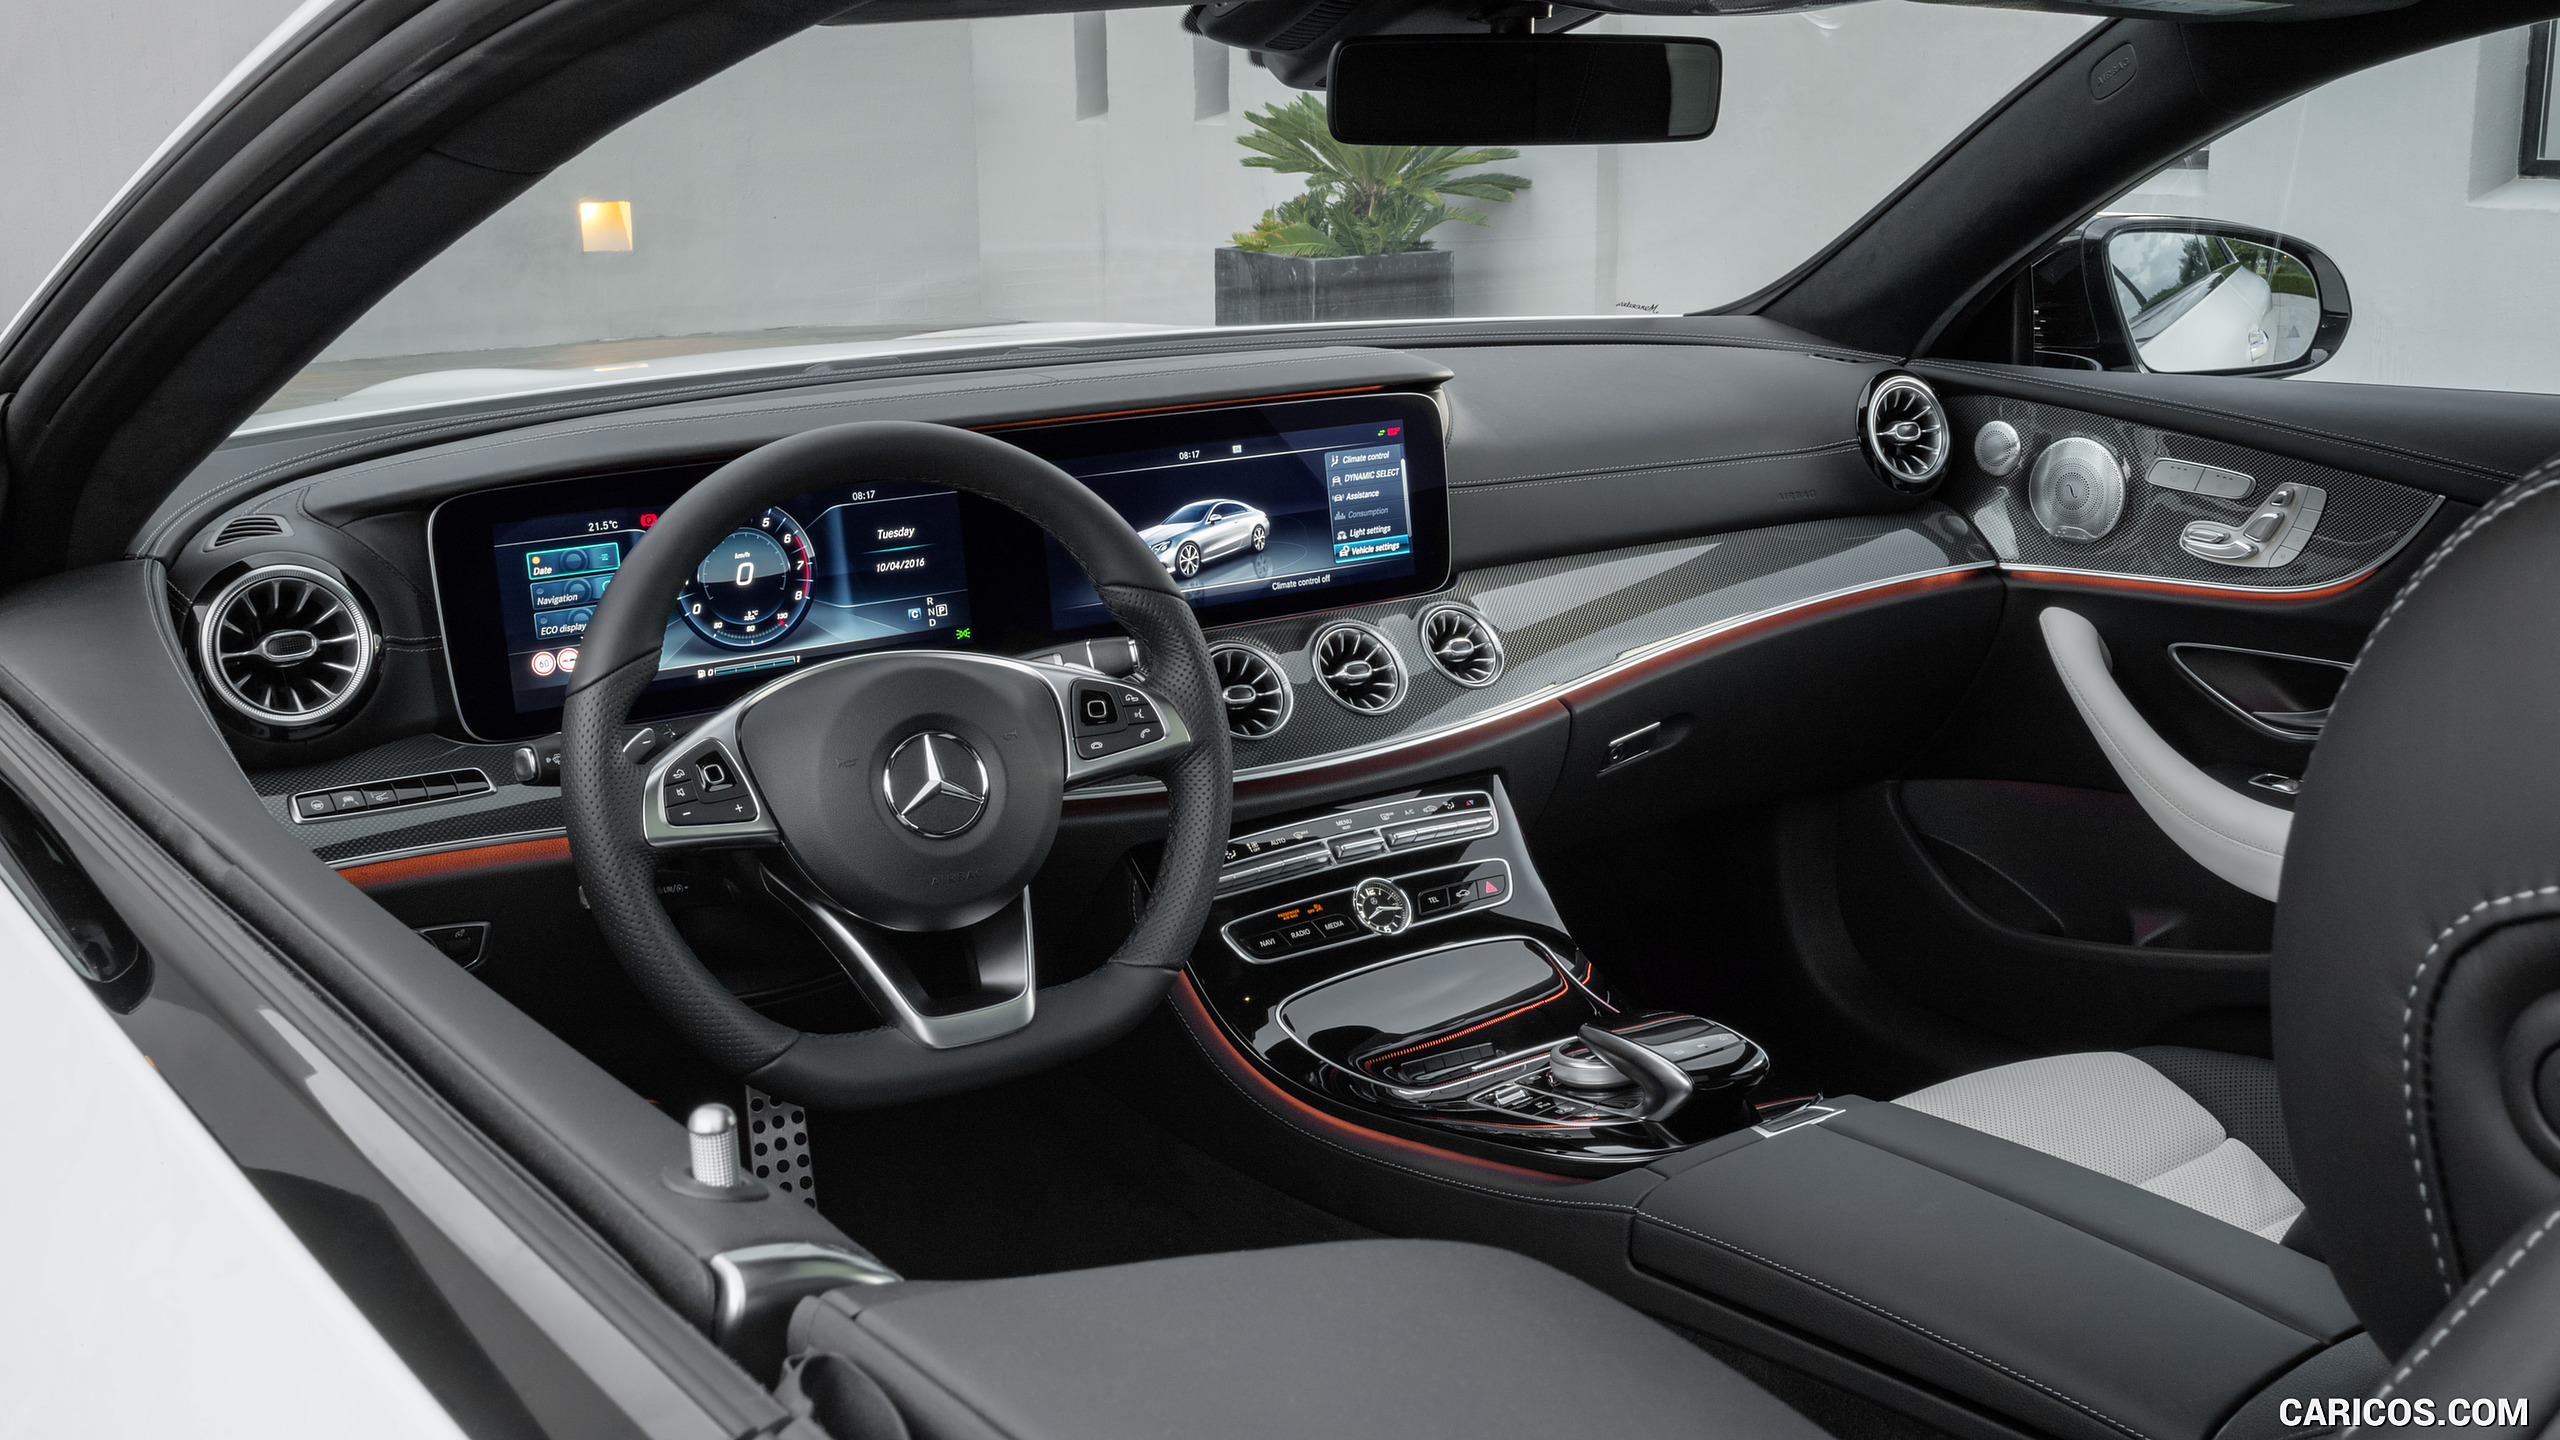 2018 Mercedes-Benz E-Class Coupe - Nappa White / Black Leather Interior, #50 of 365